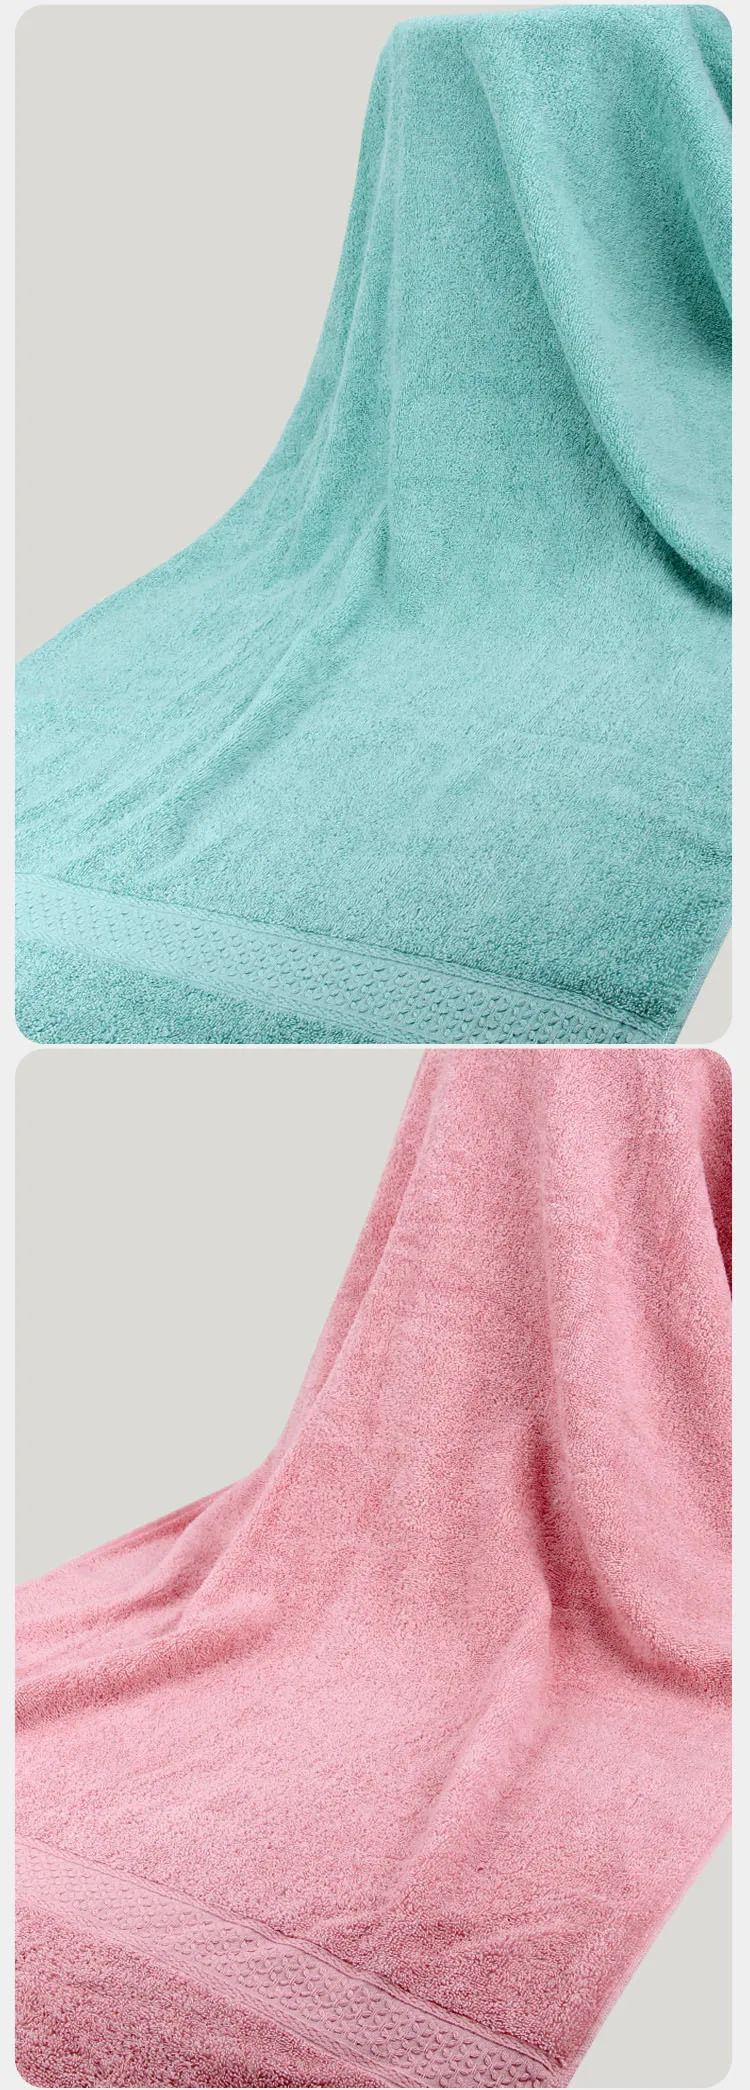 Новое поступление большое роскошное банное полотенце супер-Впитывающее Toallas хлопковое Спортивное пляжное полотенце s мягкое Экологичное печатное полотенце s